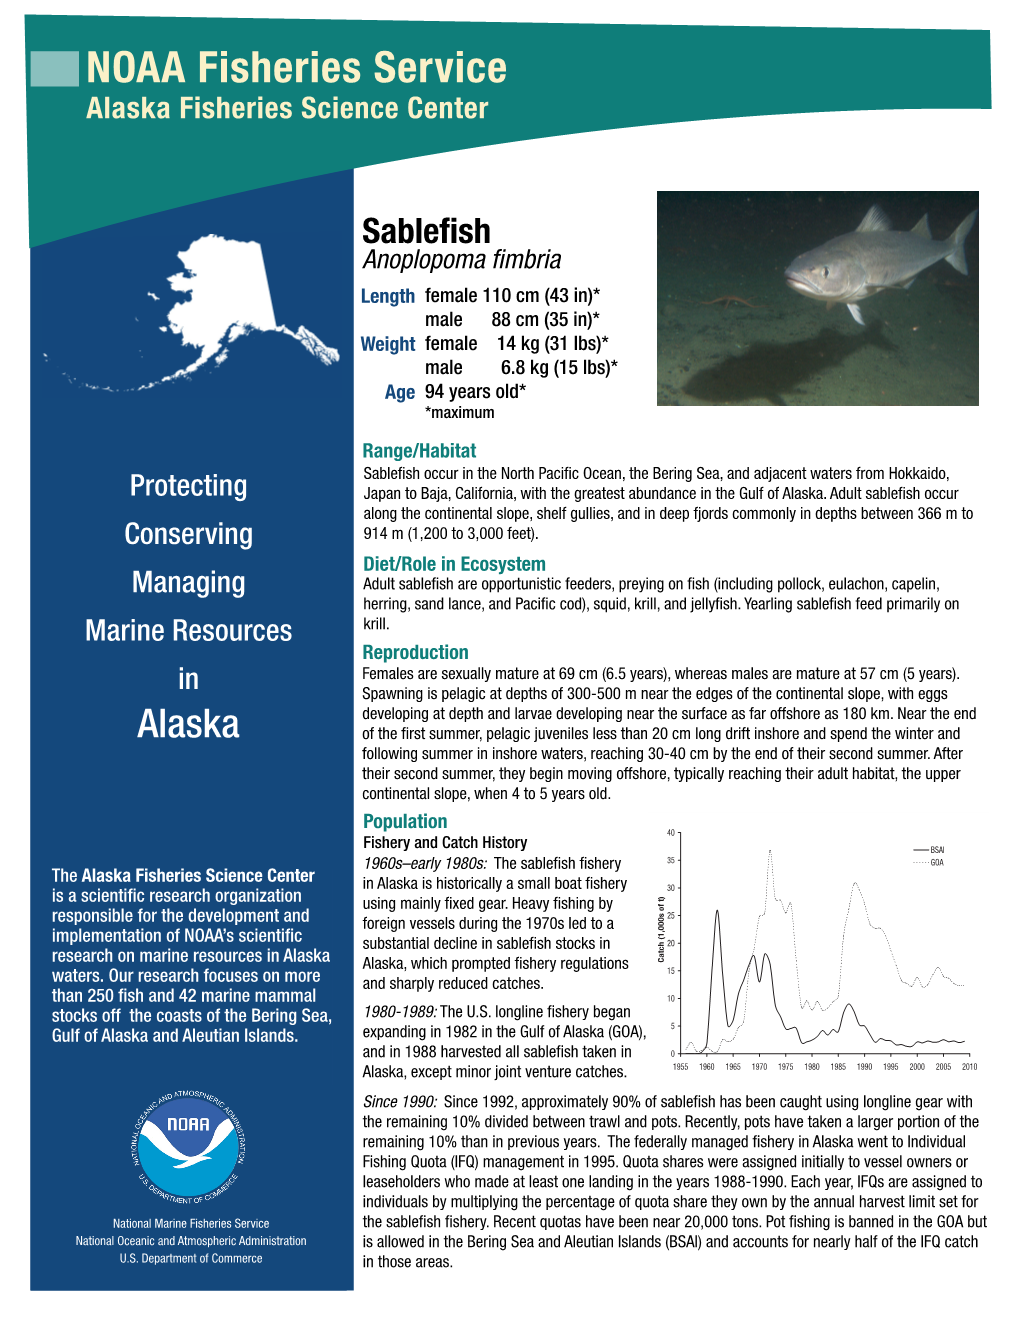 Sablefish Fact Sheet